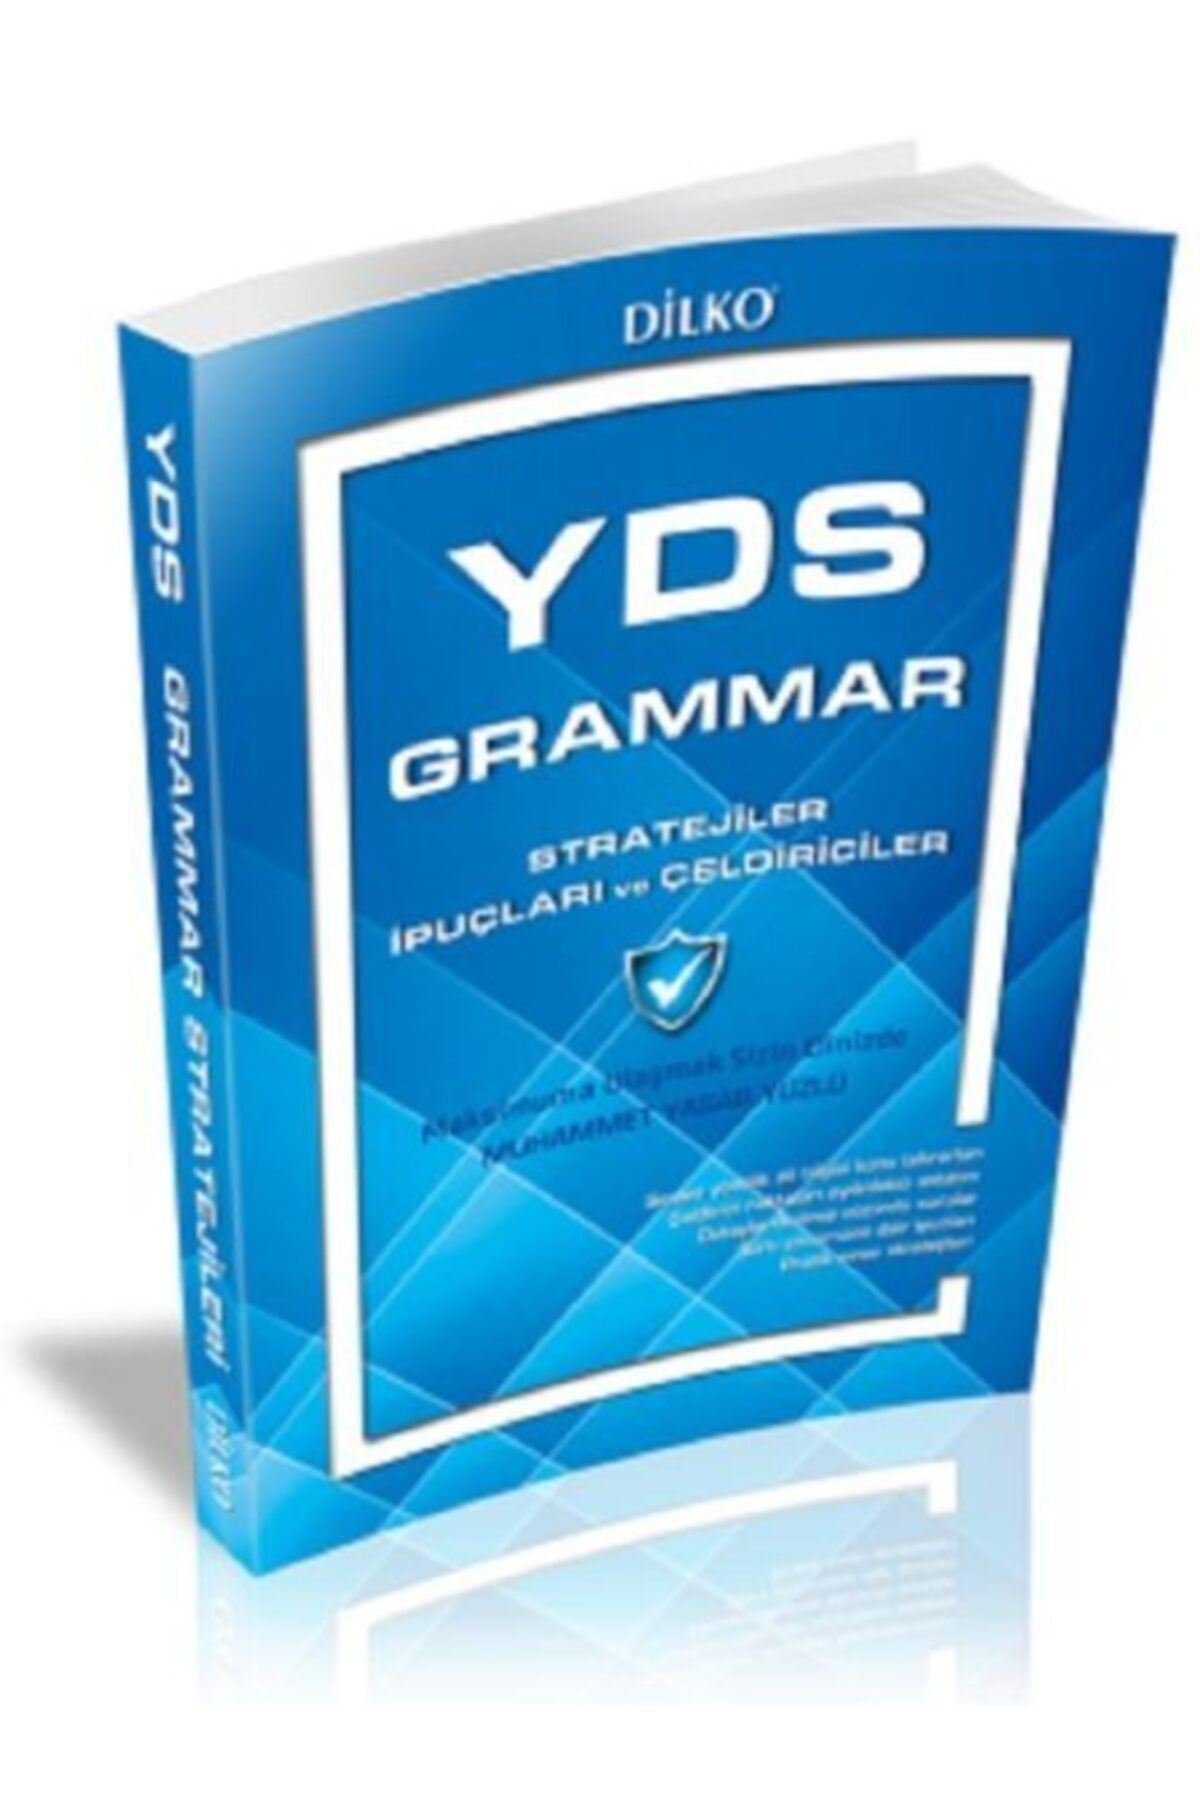 Dilko Yayıncılık Dilko Yds Grammar Stratejiler Ipuçları Ve Çeldiriciler